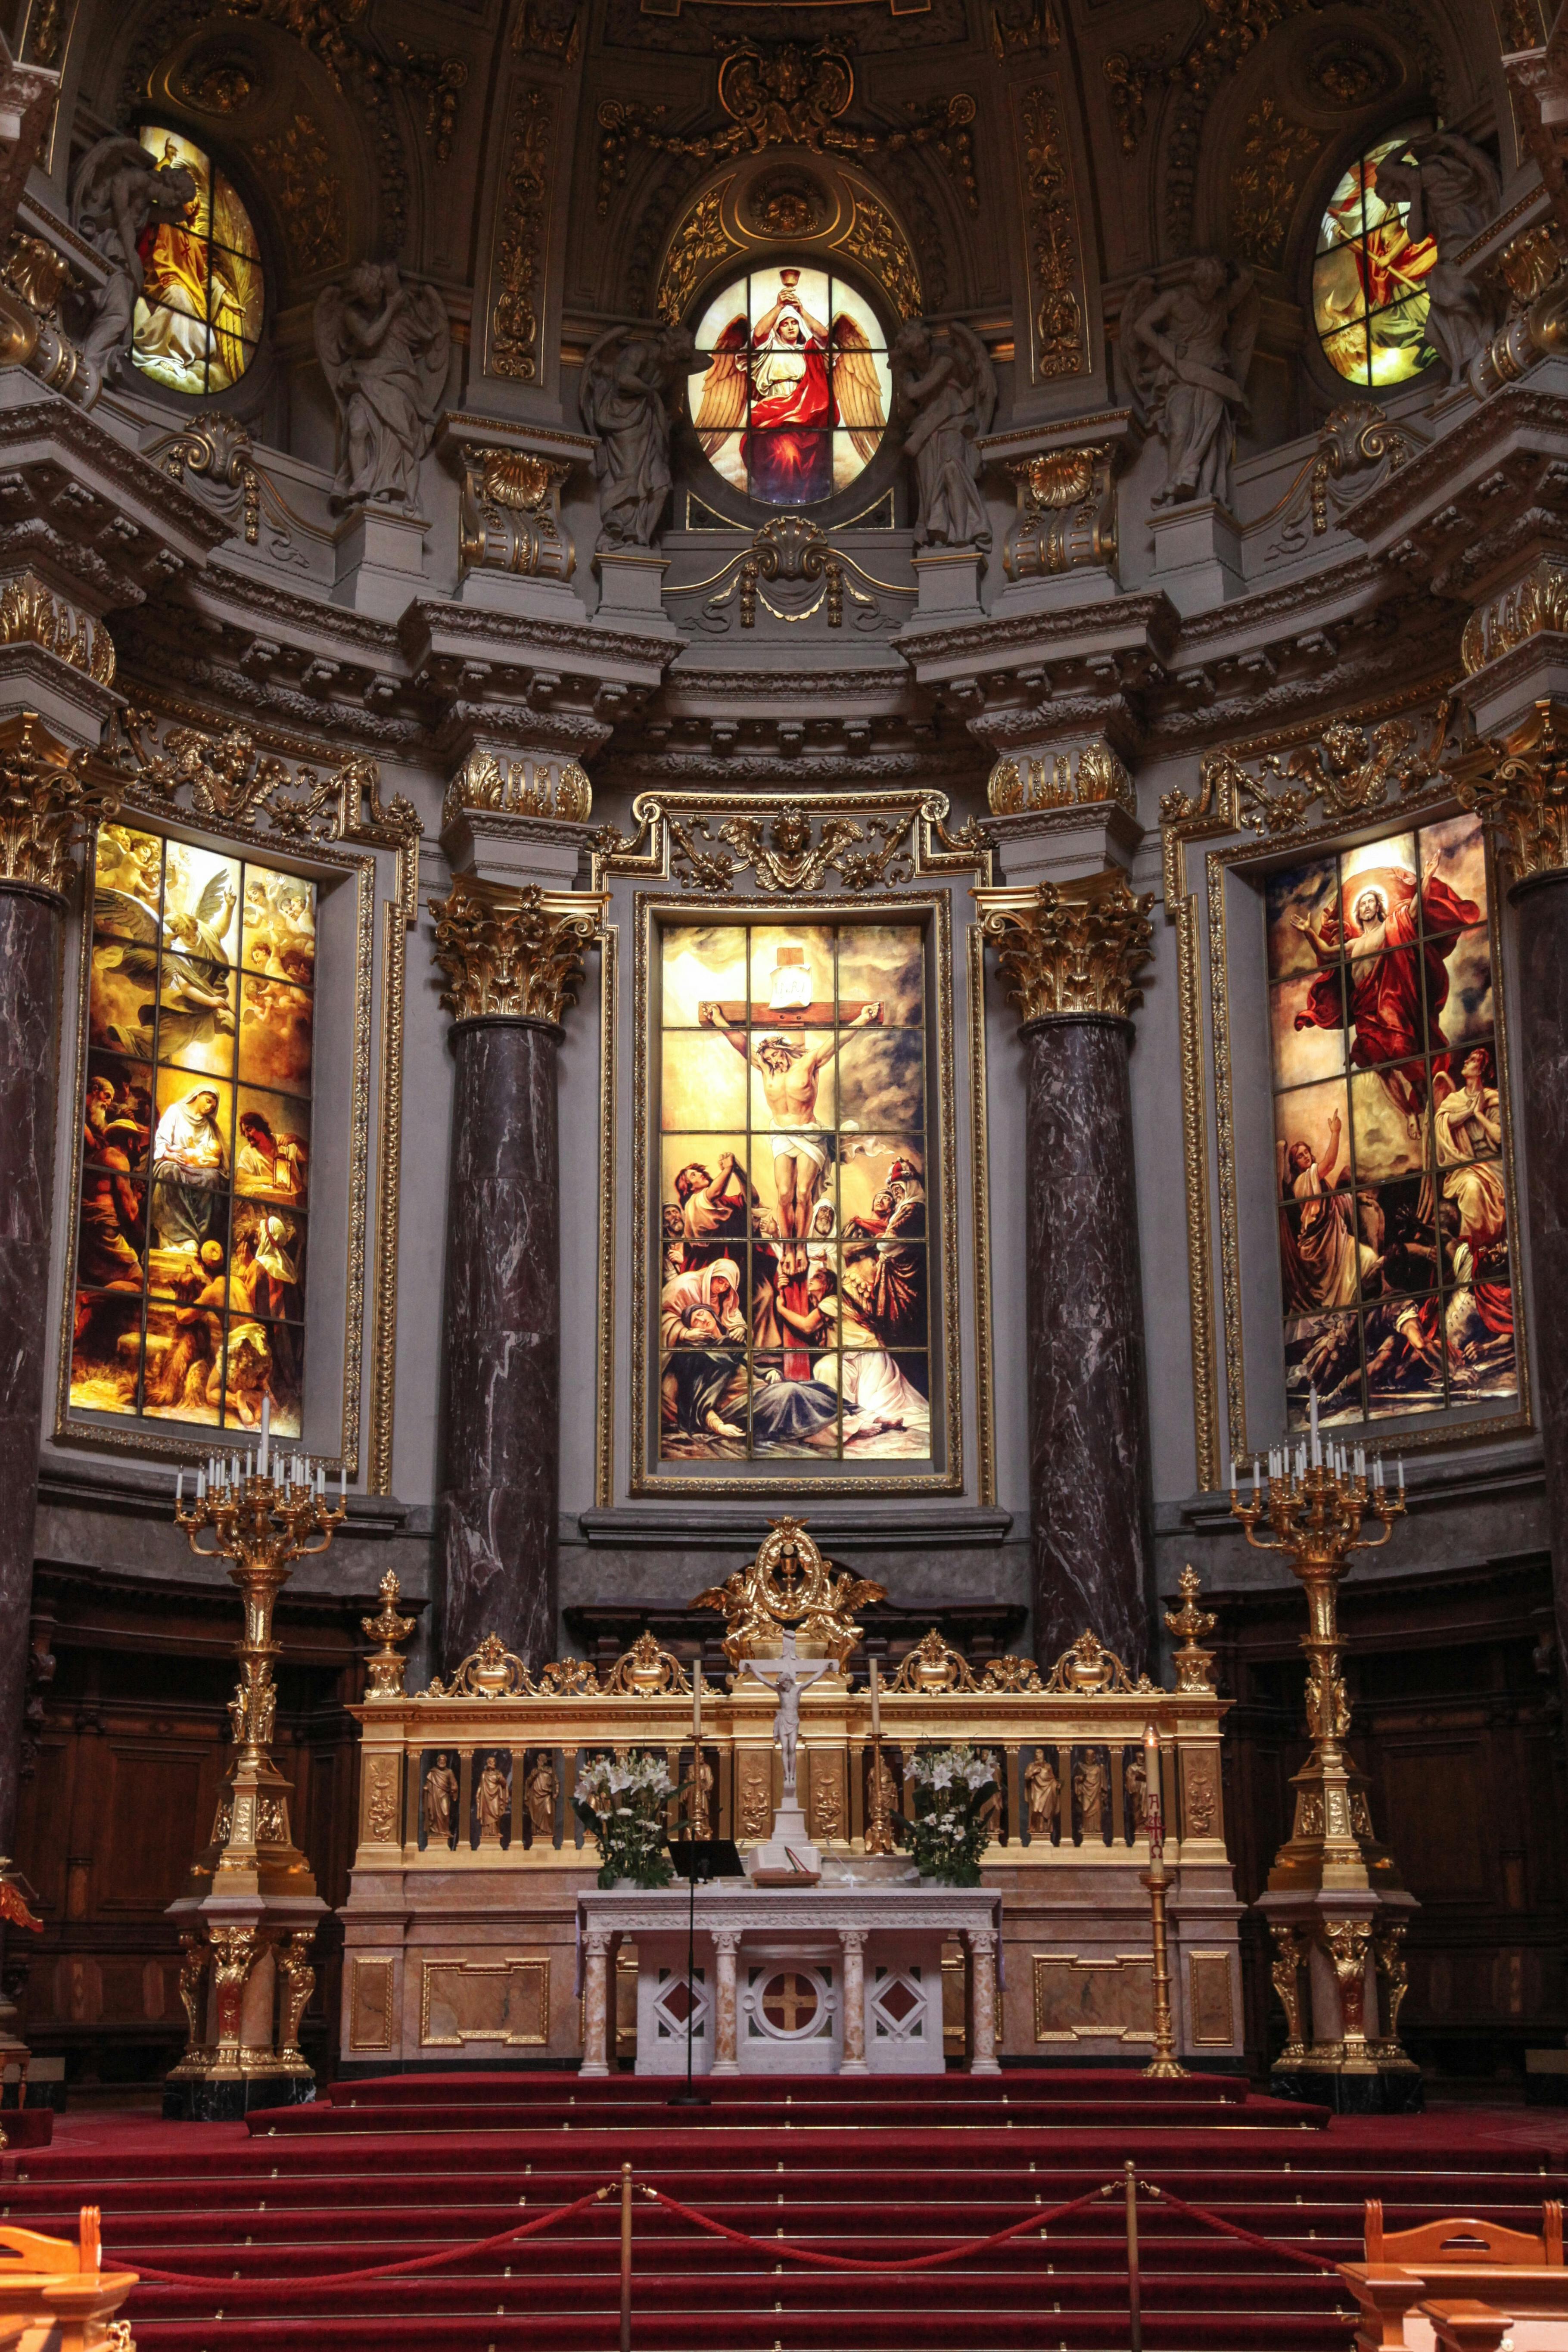 Kostenlose Bild: Altar, Kathedrale, katholische, Kreuz, Gold